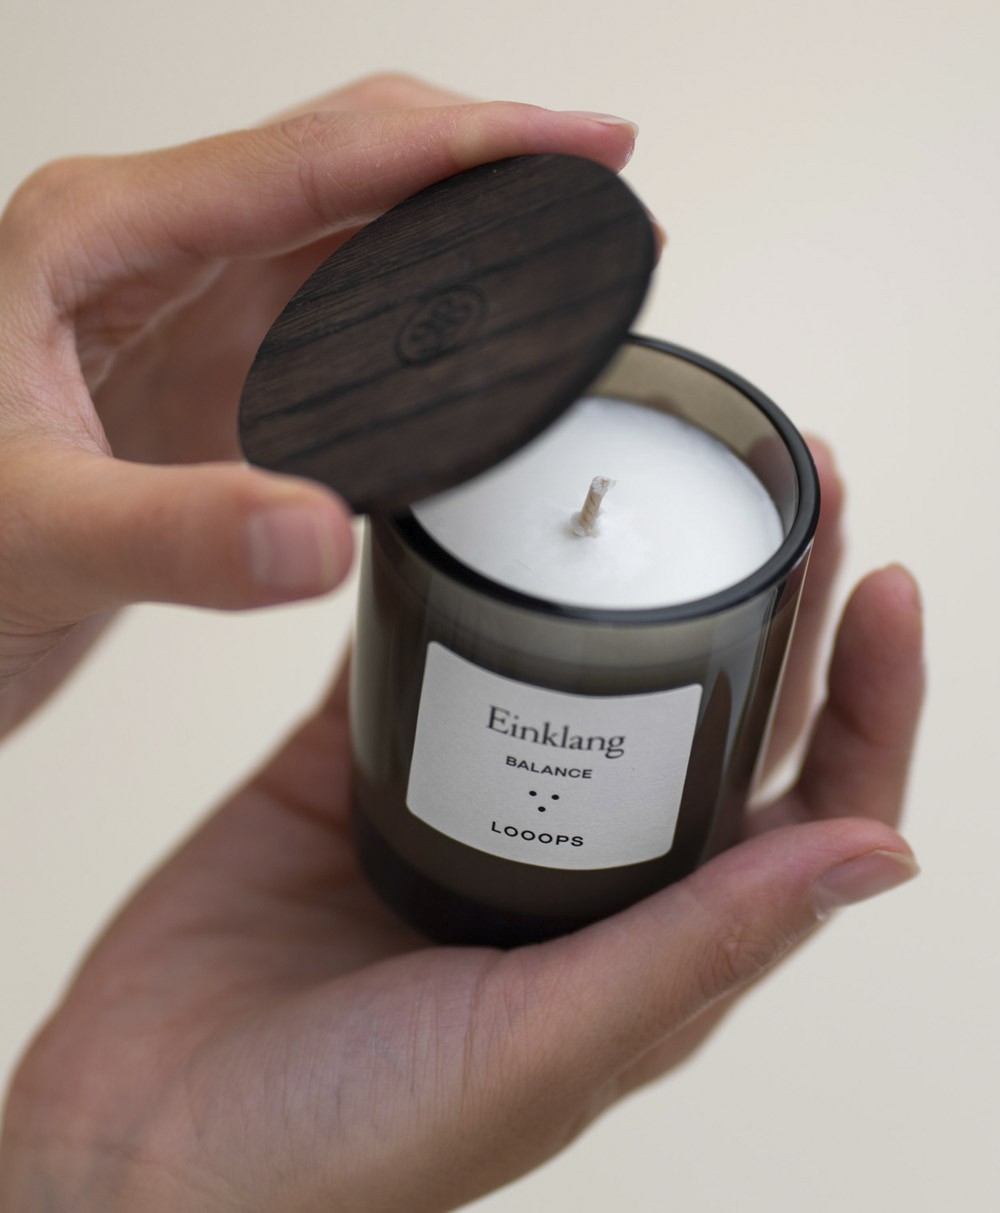 Looops Duftkerze von Looops Kerzen – online im RAUM concept store bestellen